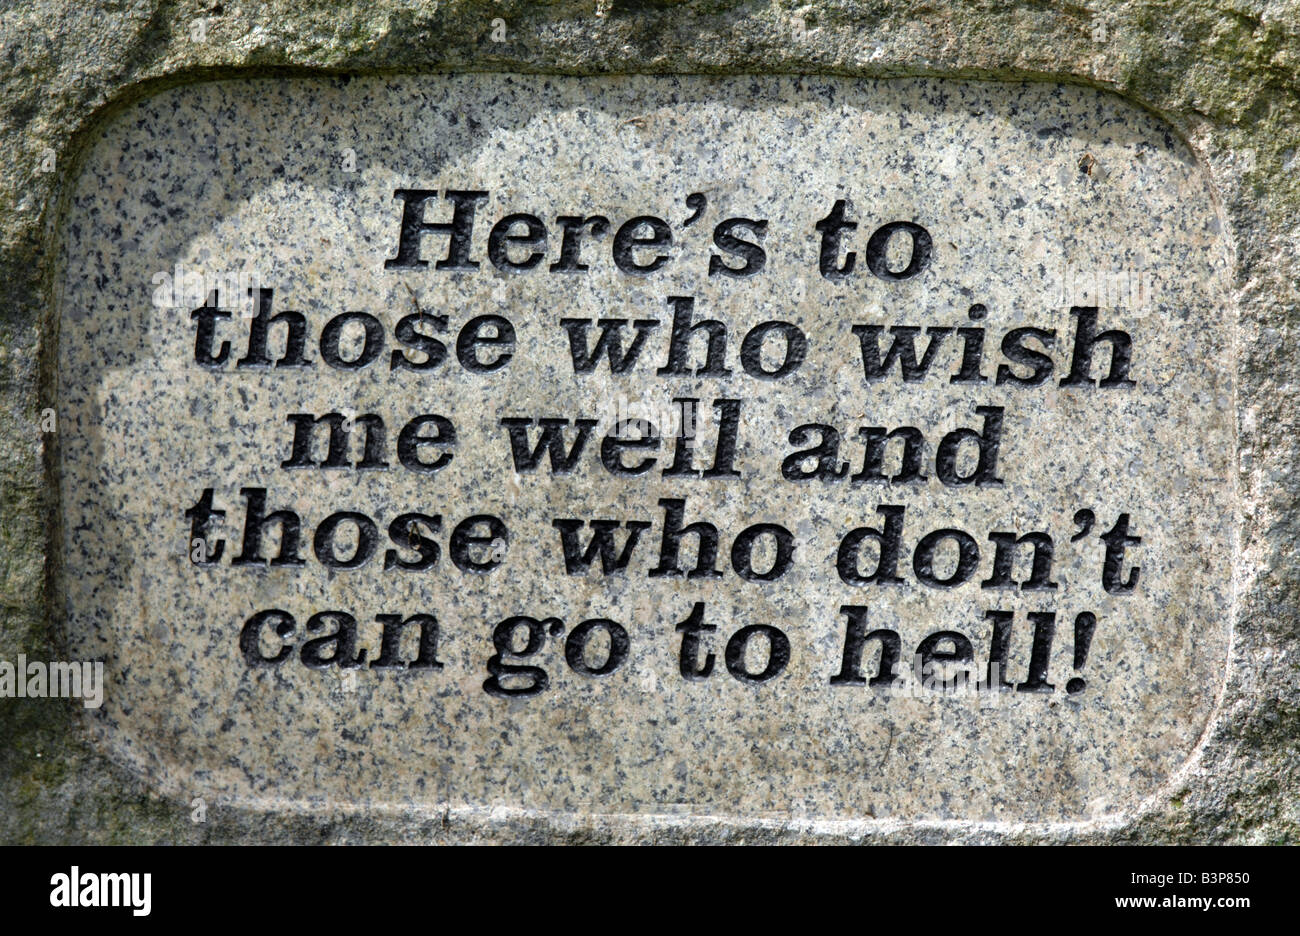 "He aquí a quienes me desea bien y aquellos que no pueden ir al infierno" epitafio Foto de stock